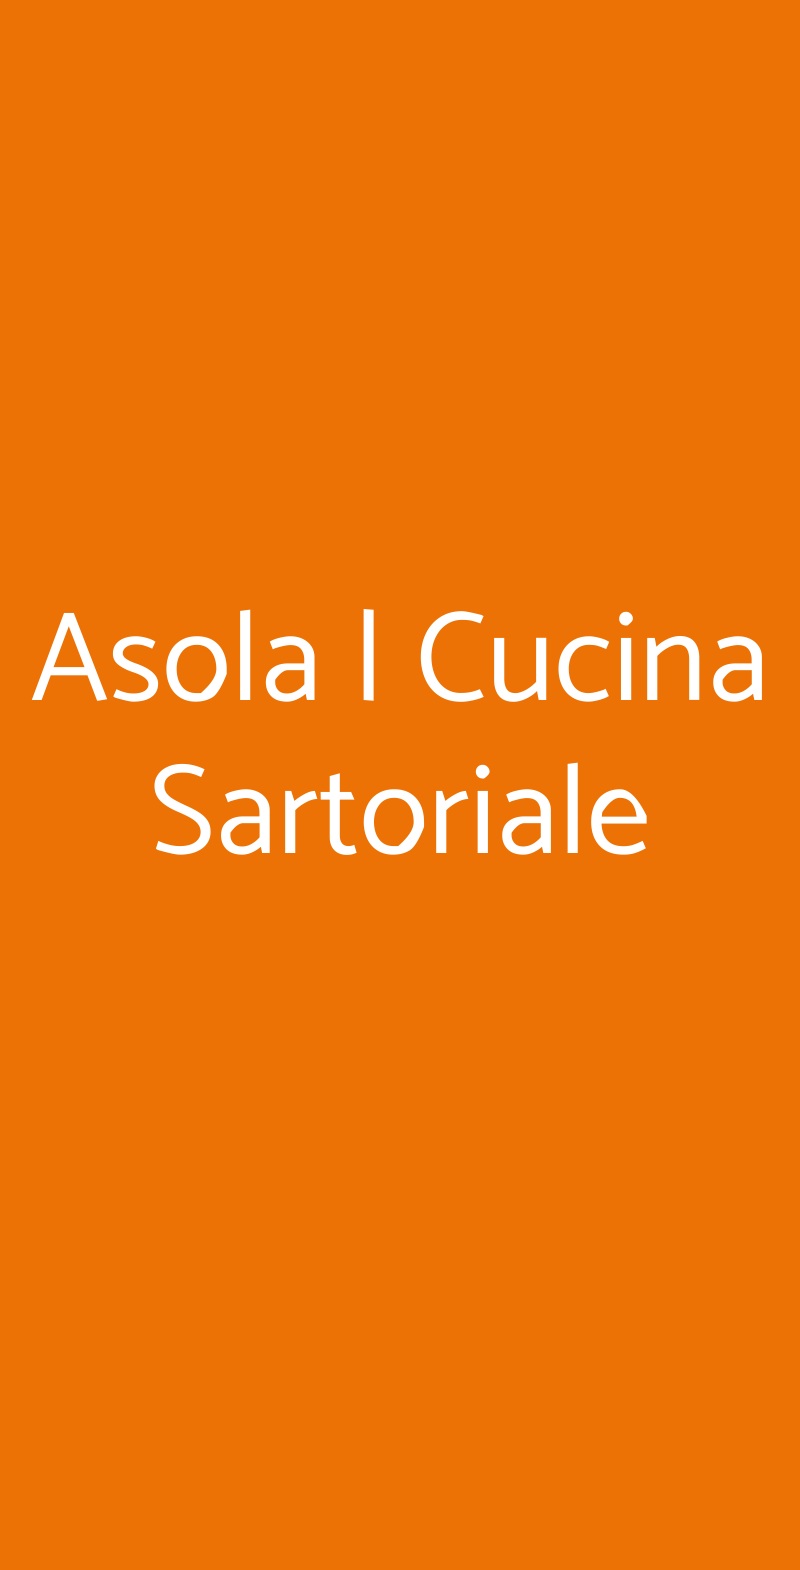 Asola | Cucina Sartoriale Milano menù 1 pagina